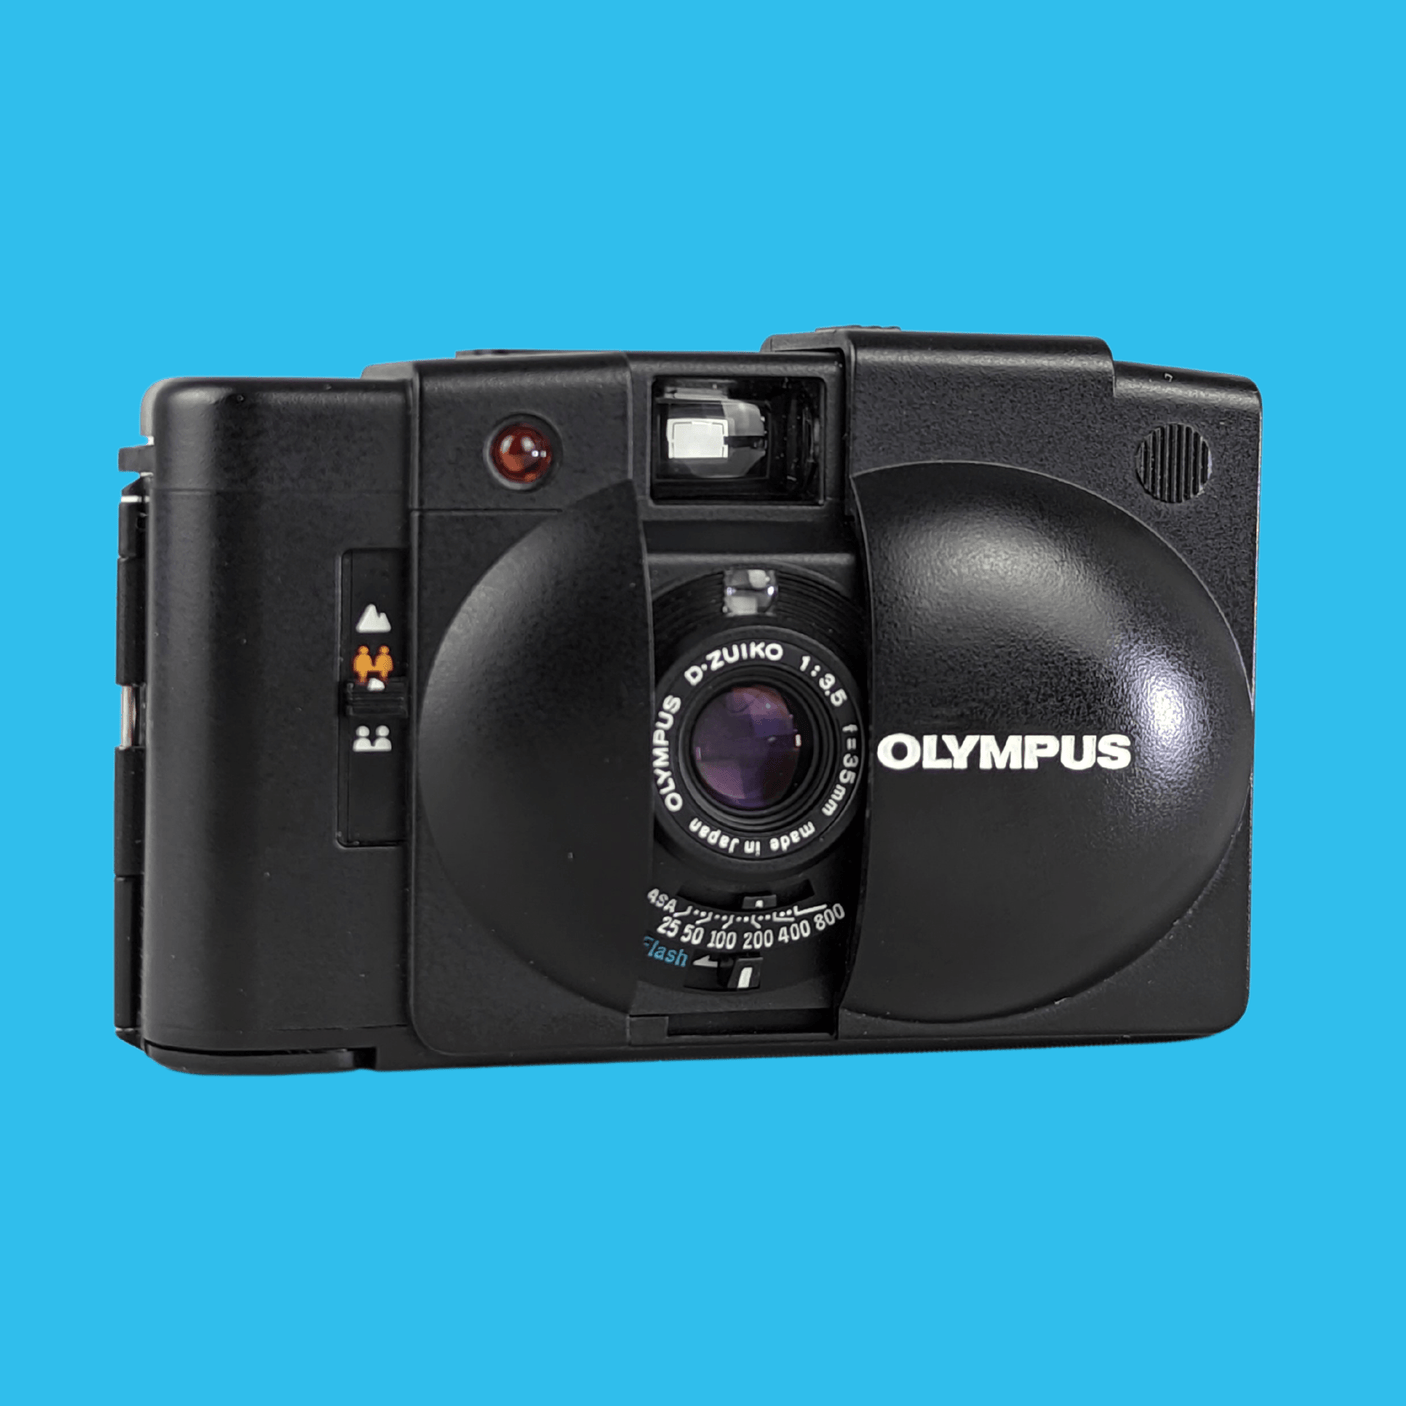 オリンパス XA2 35mm フィルム カメラ ポイント アンド シュート